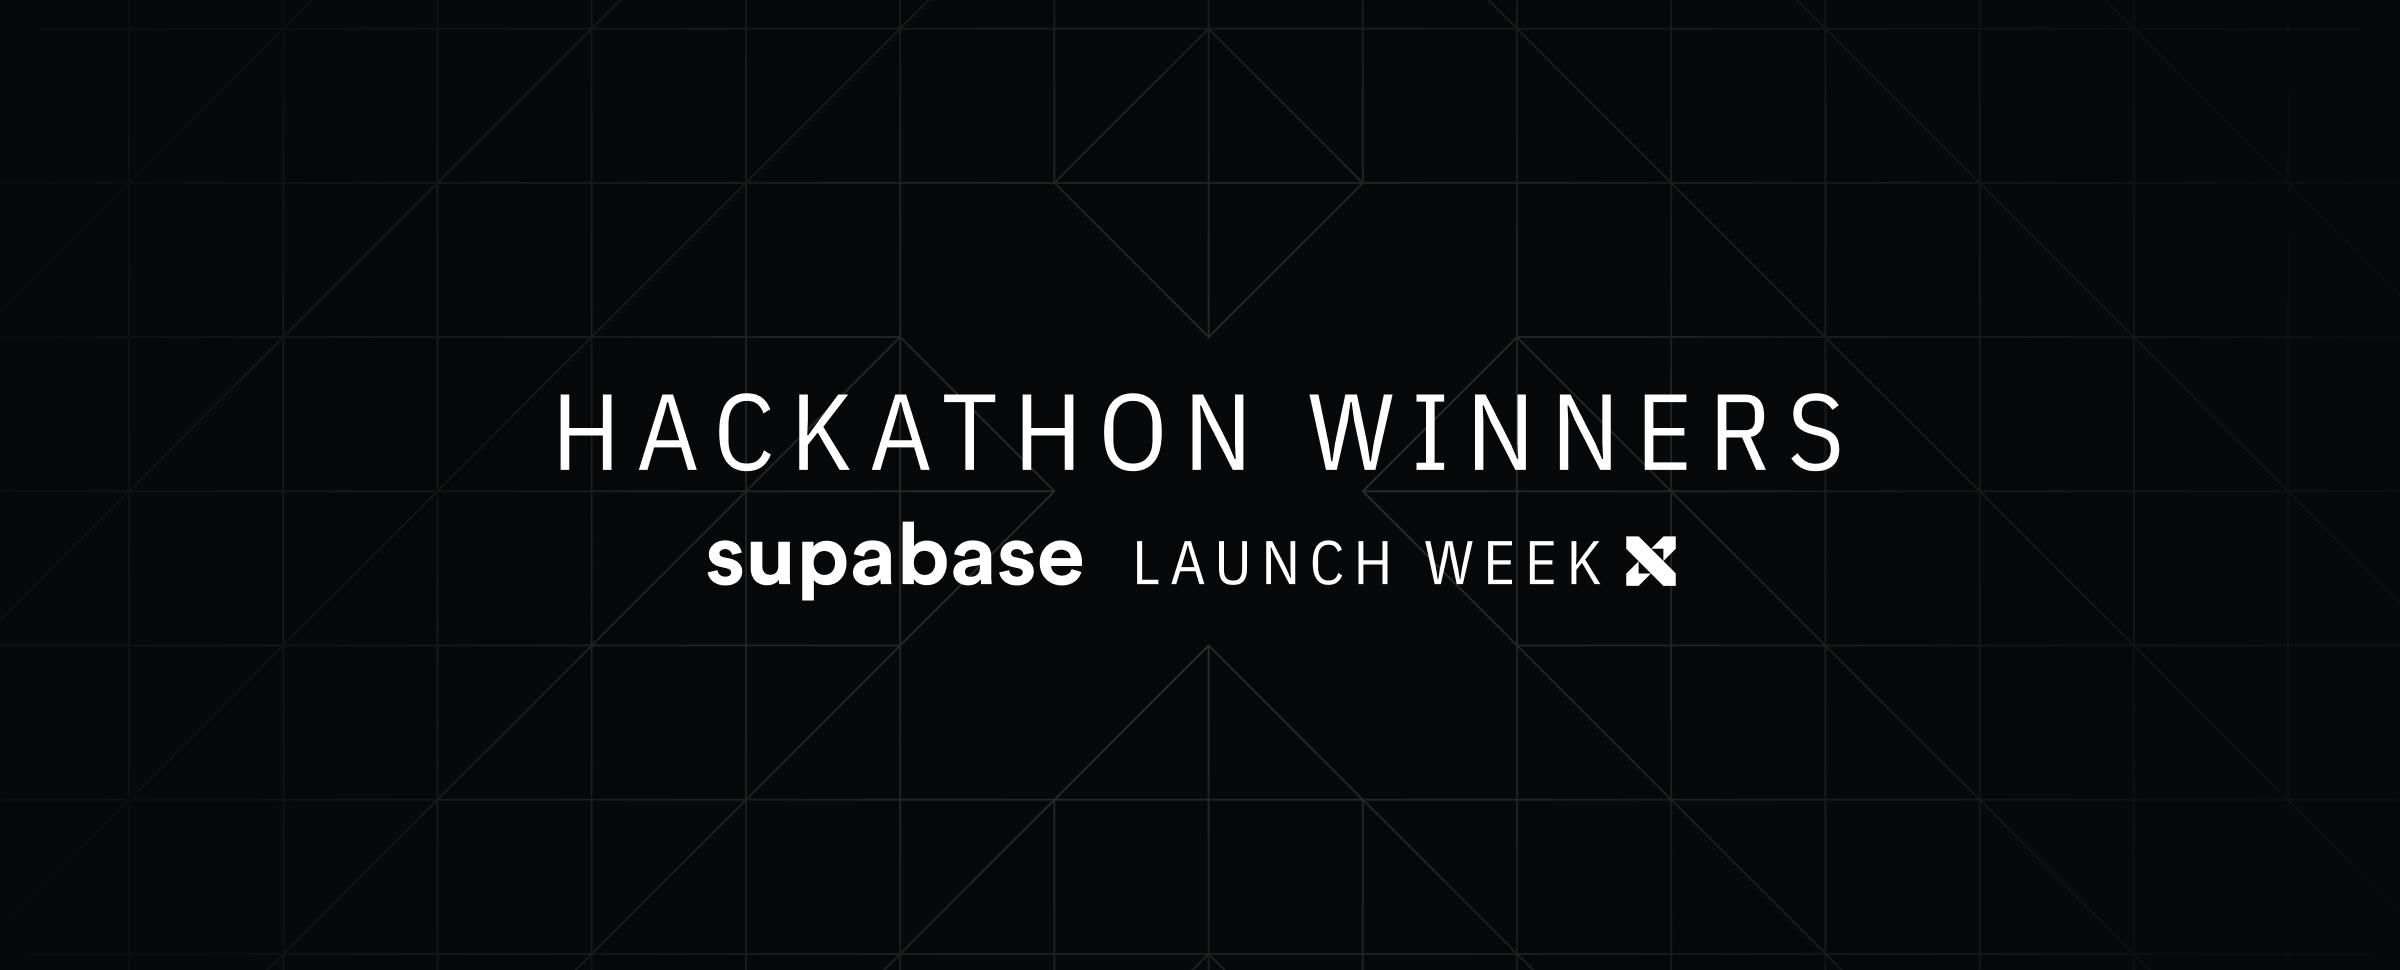 Launch Week X Hackathon Winners